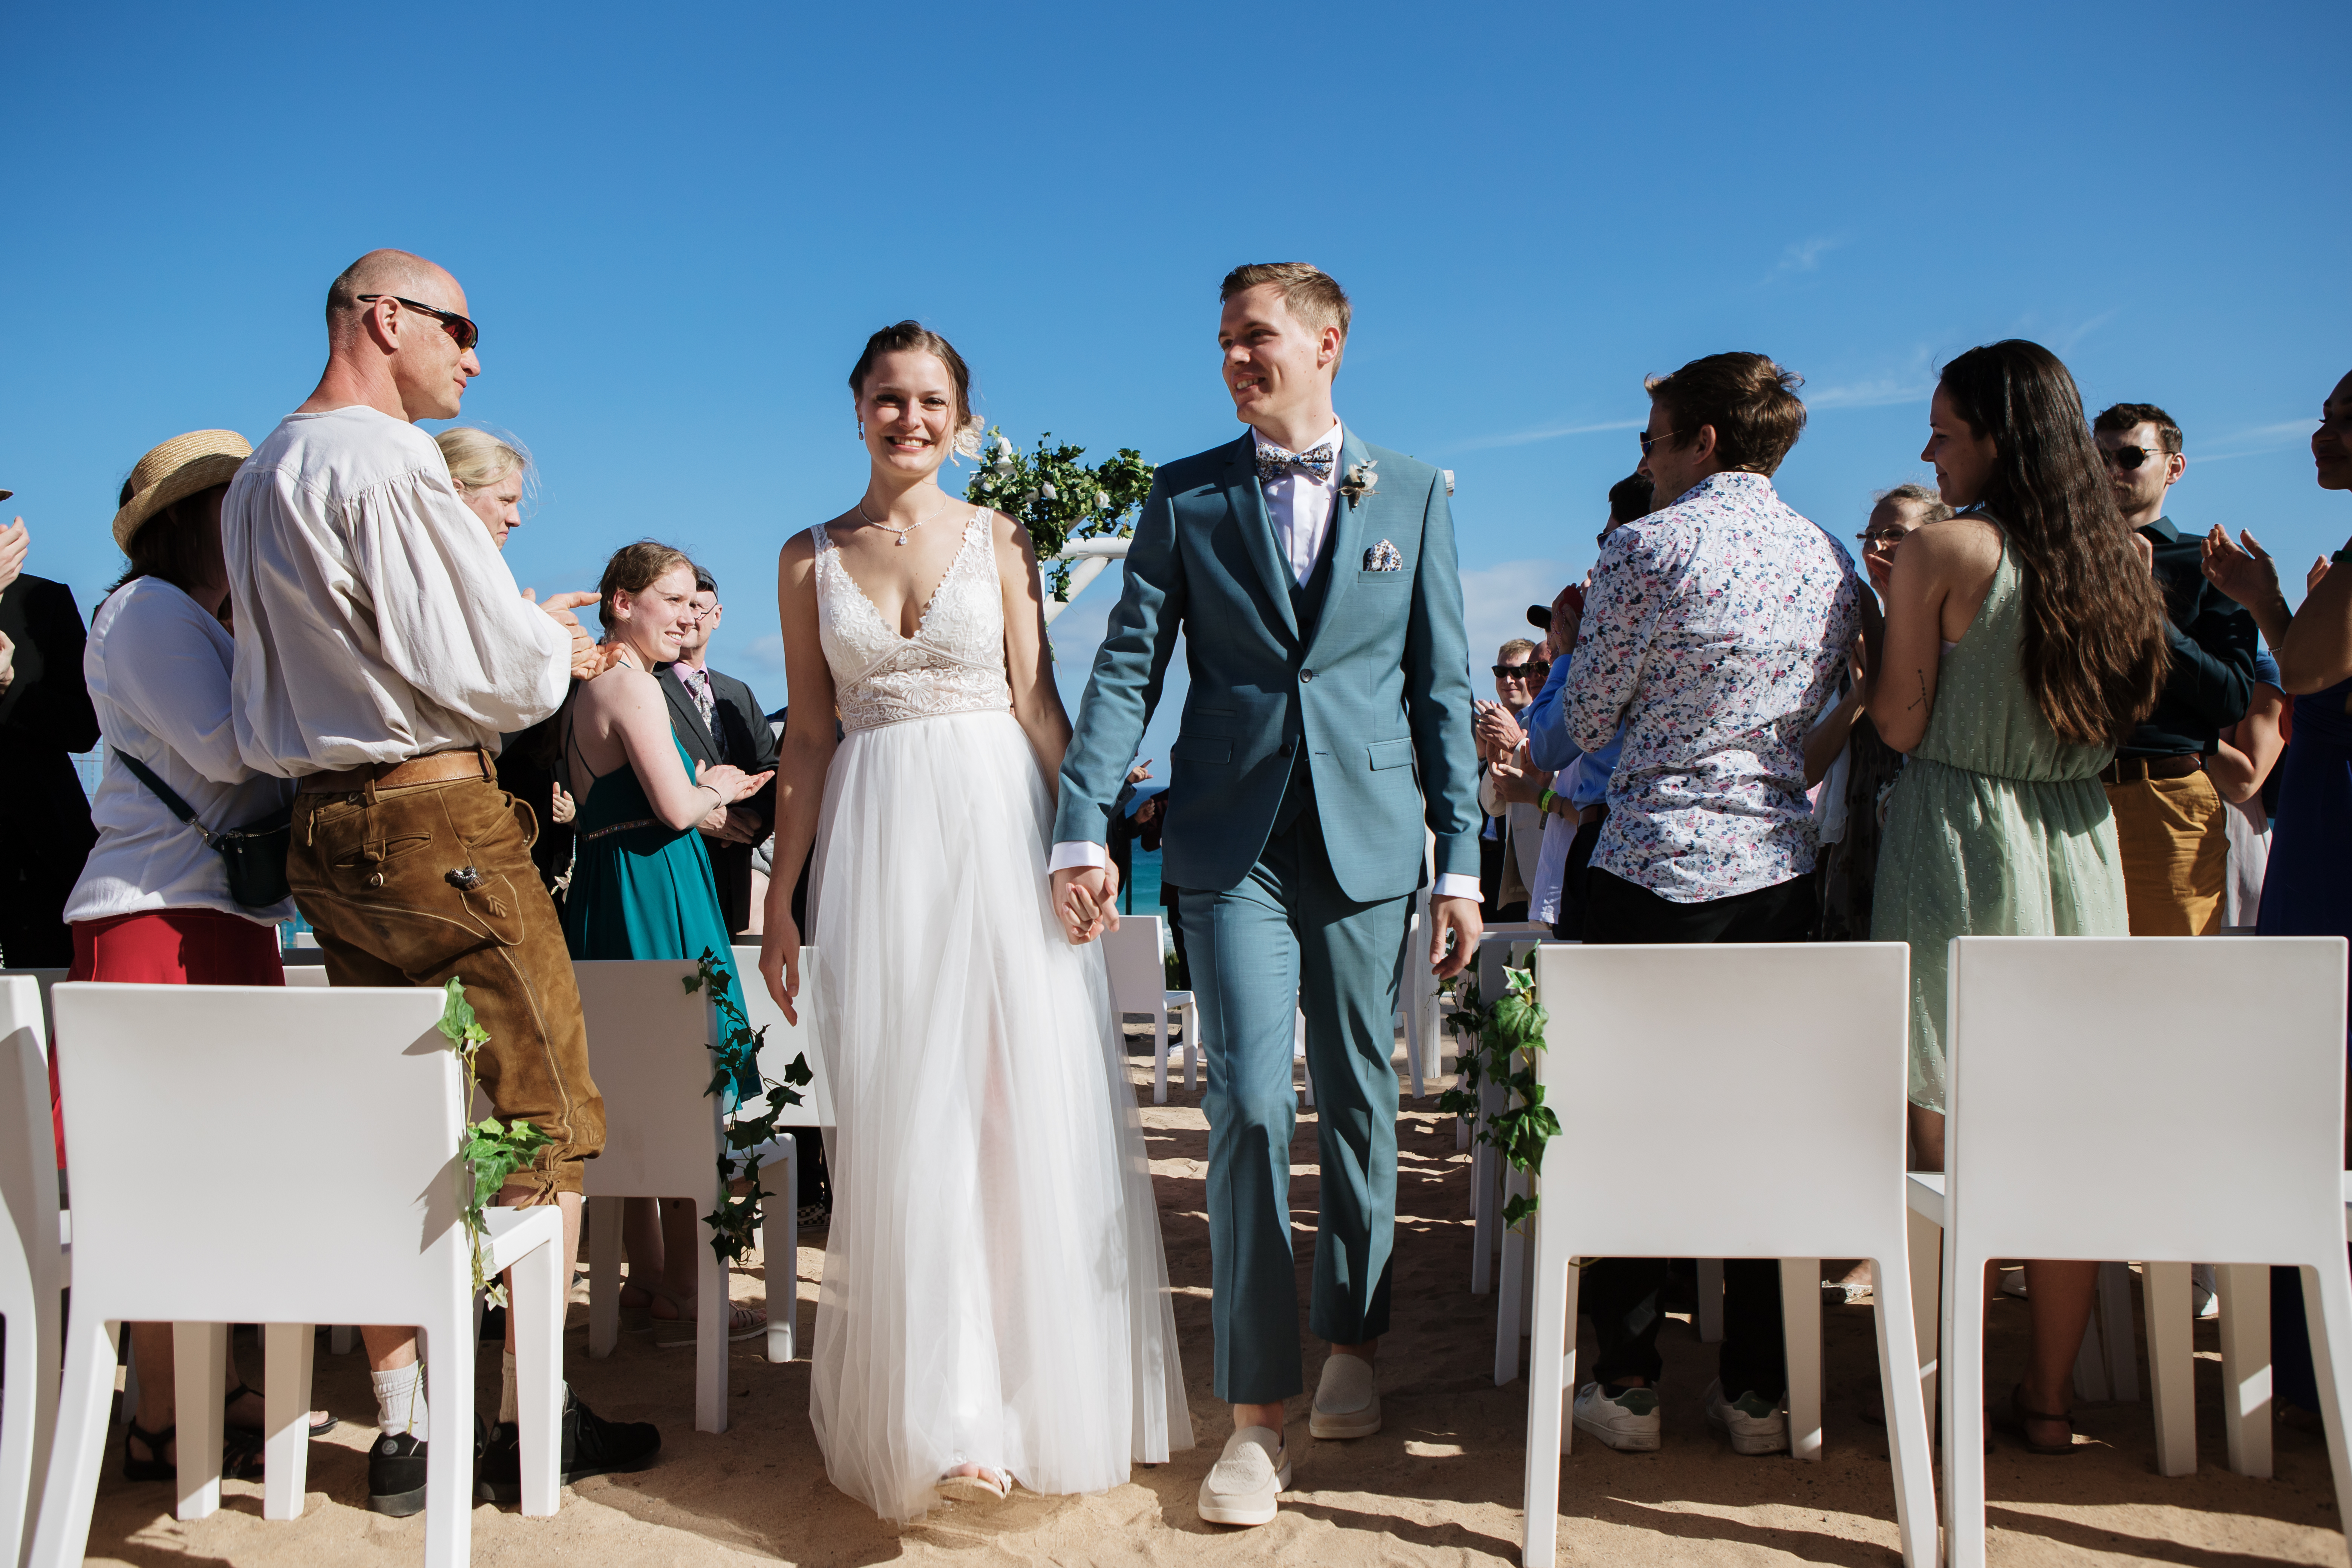 Unvergessliche Erinnerungen an Ihren Hochzeitstag in Fuerteventura durch professionelle Fotografie. Braut und Bräutigam verlassen ihre Zeremonie im Fuerteventura Princess Hotel in Esquinzo, während Gäste sie grüßen. Unser erfahrener Hochzeitsfotograf fängt die Magie des Moments ein, damit Sie ihn für immer in Erinnerung behalten können